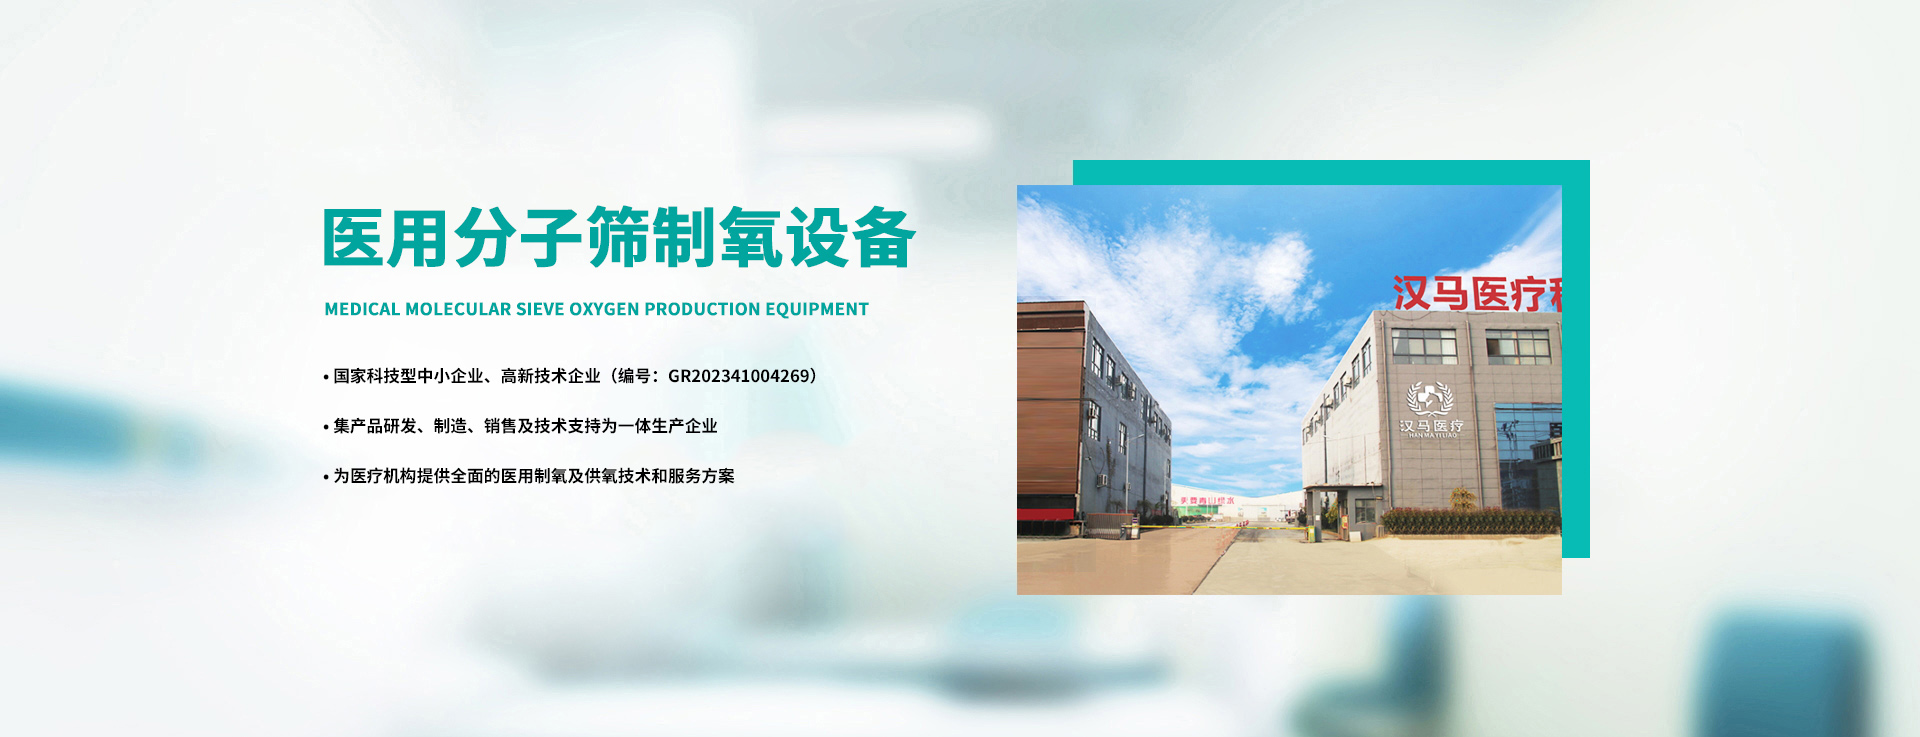 安陽(yáng)市漢馬醫療科技有限公司_PC